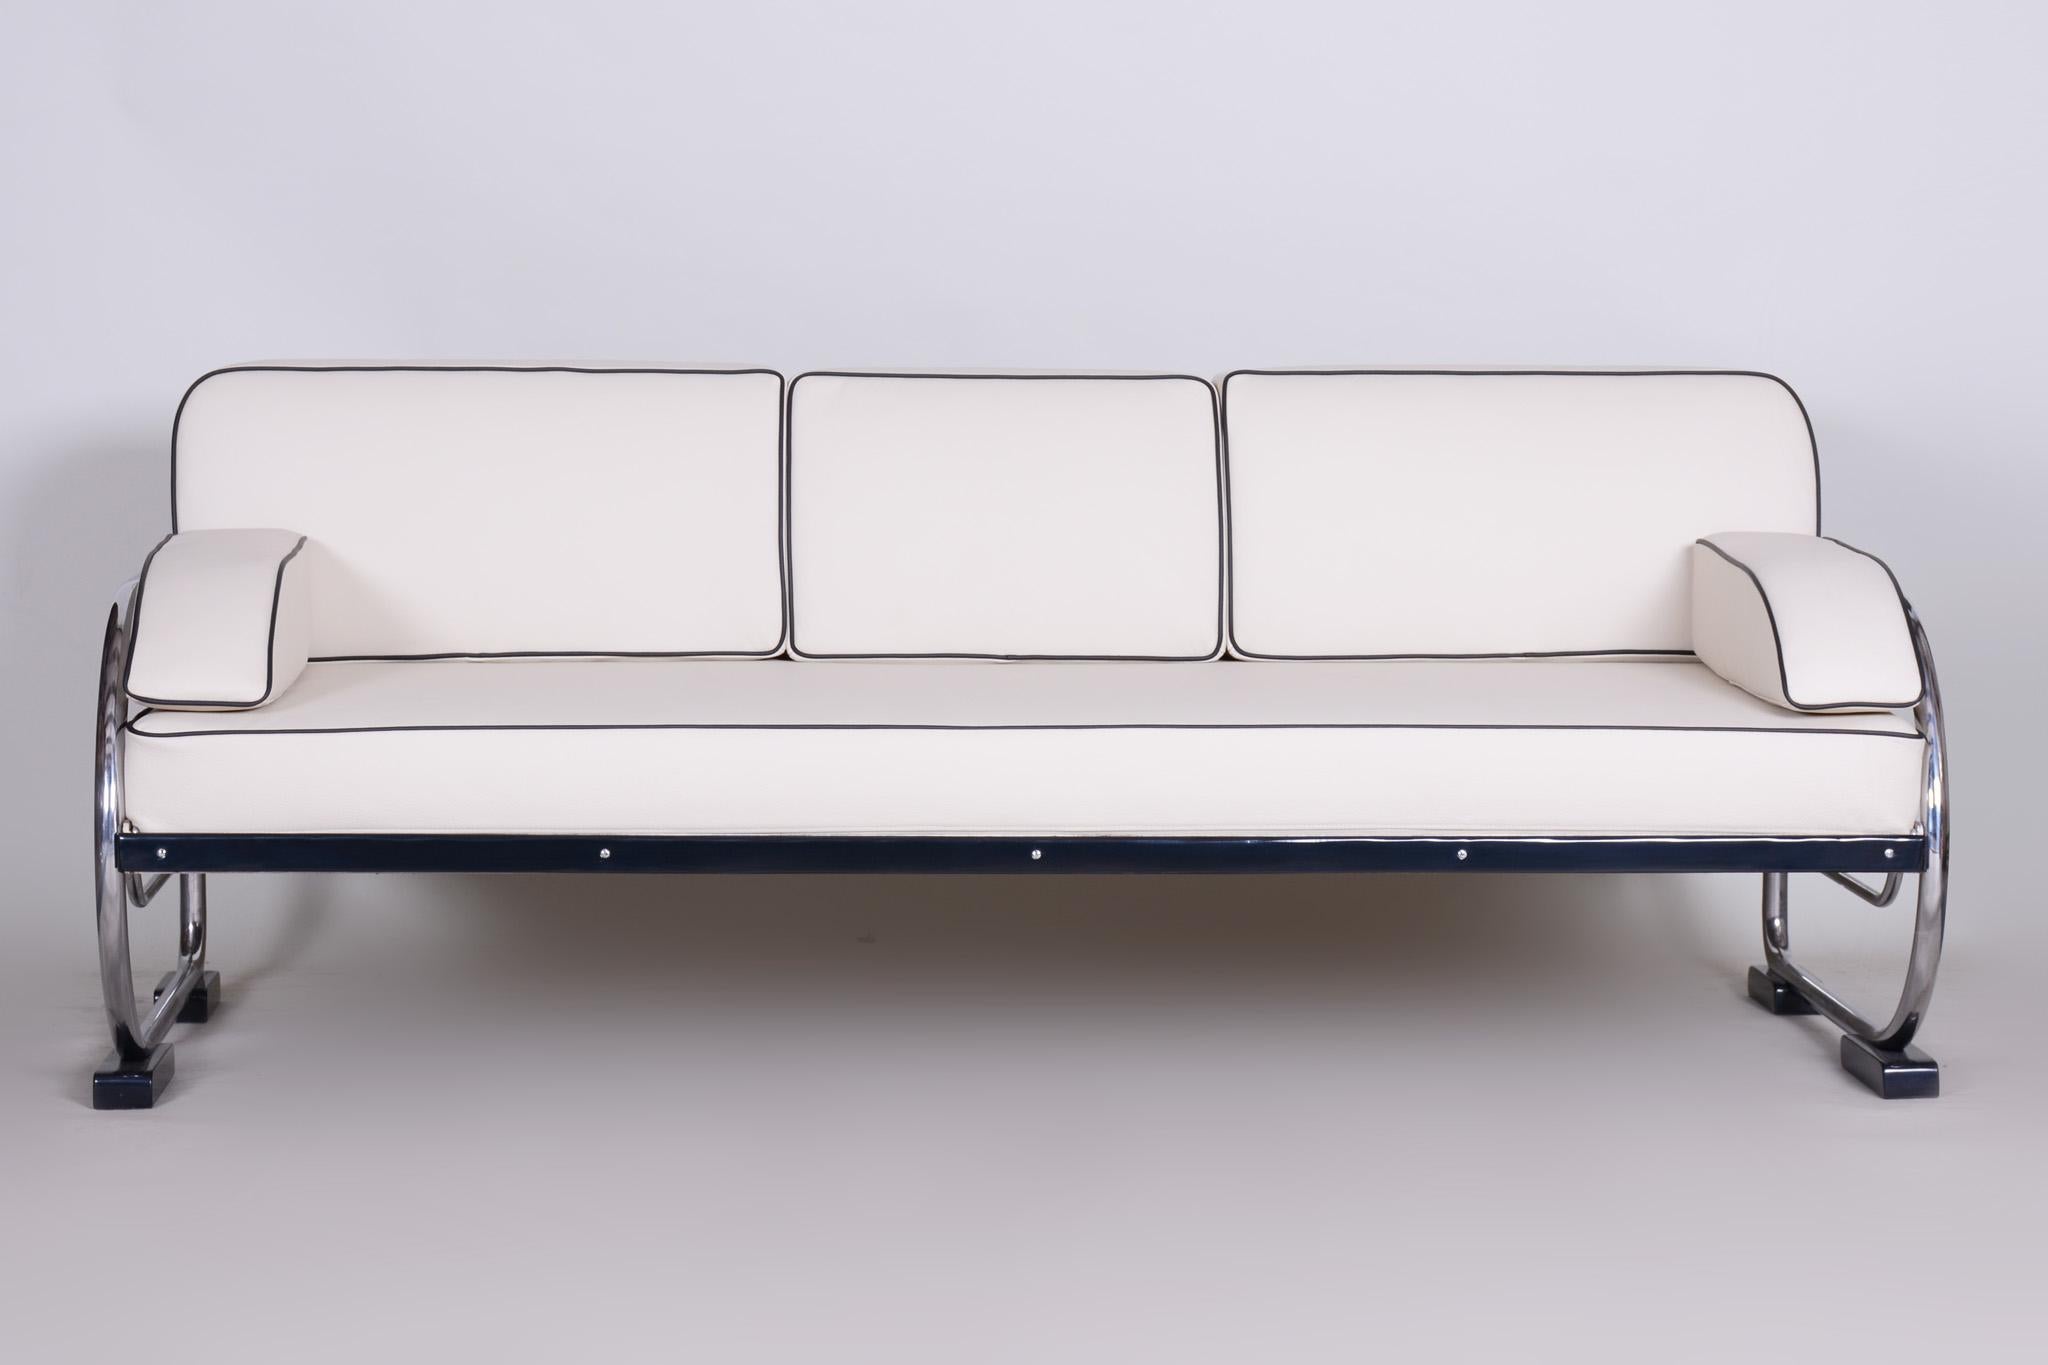 Canapé de style Bauhaus avec cadre en acier tubulaire chromé.
Fabriqué par Robert Slezák dans les années 1930.
L'acier tubulaire chromé est en parfait état d'origine.
Tapissé de cuir blanc de haute qualité.
Source : Tchécoslovaquie